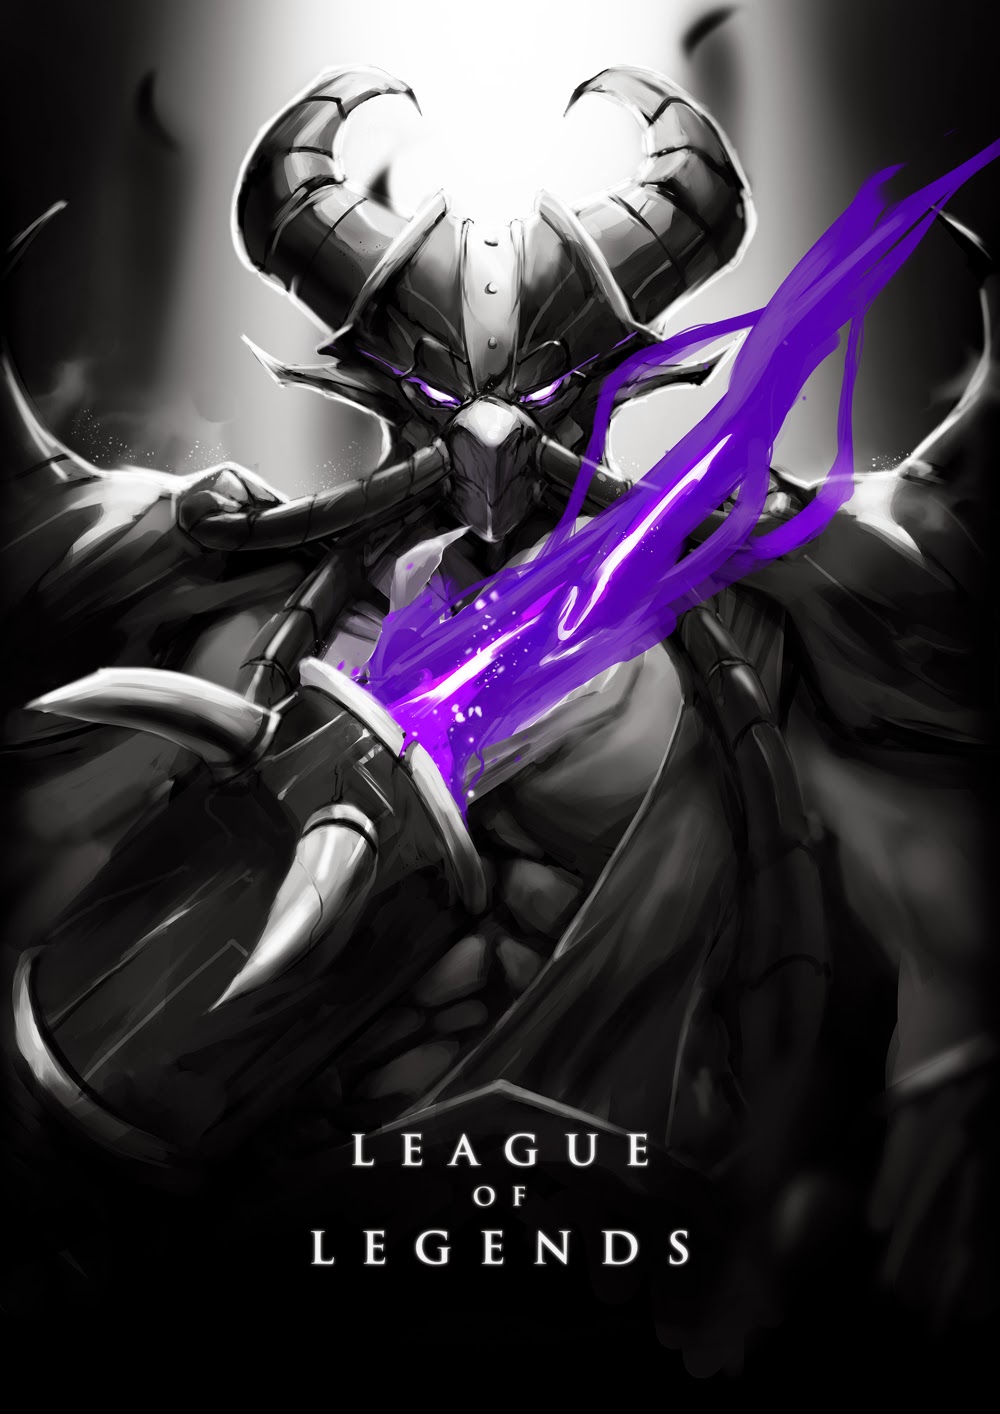 League of Legends wallpaper by Wacalac on deviantART